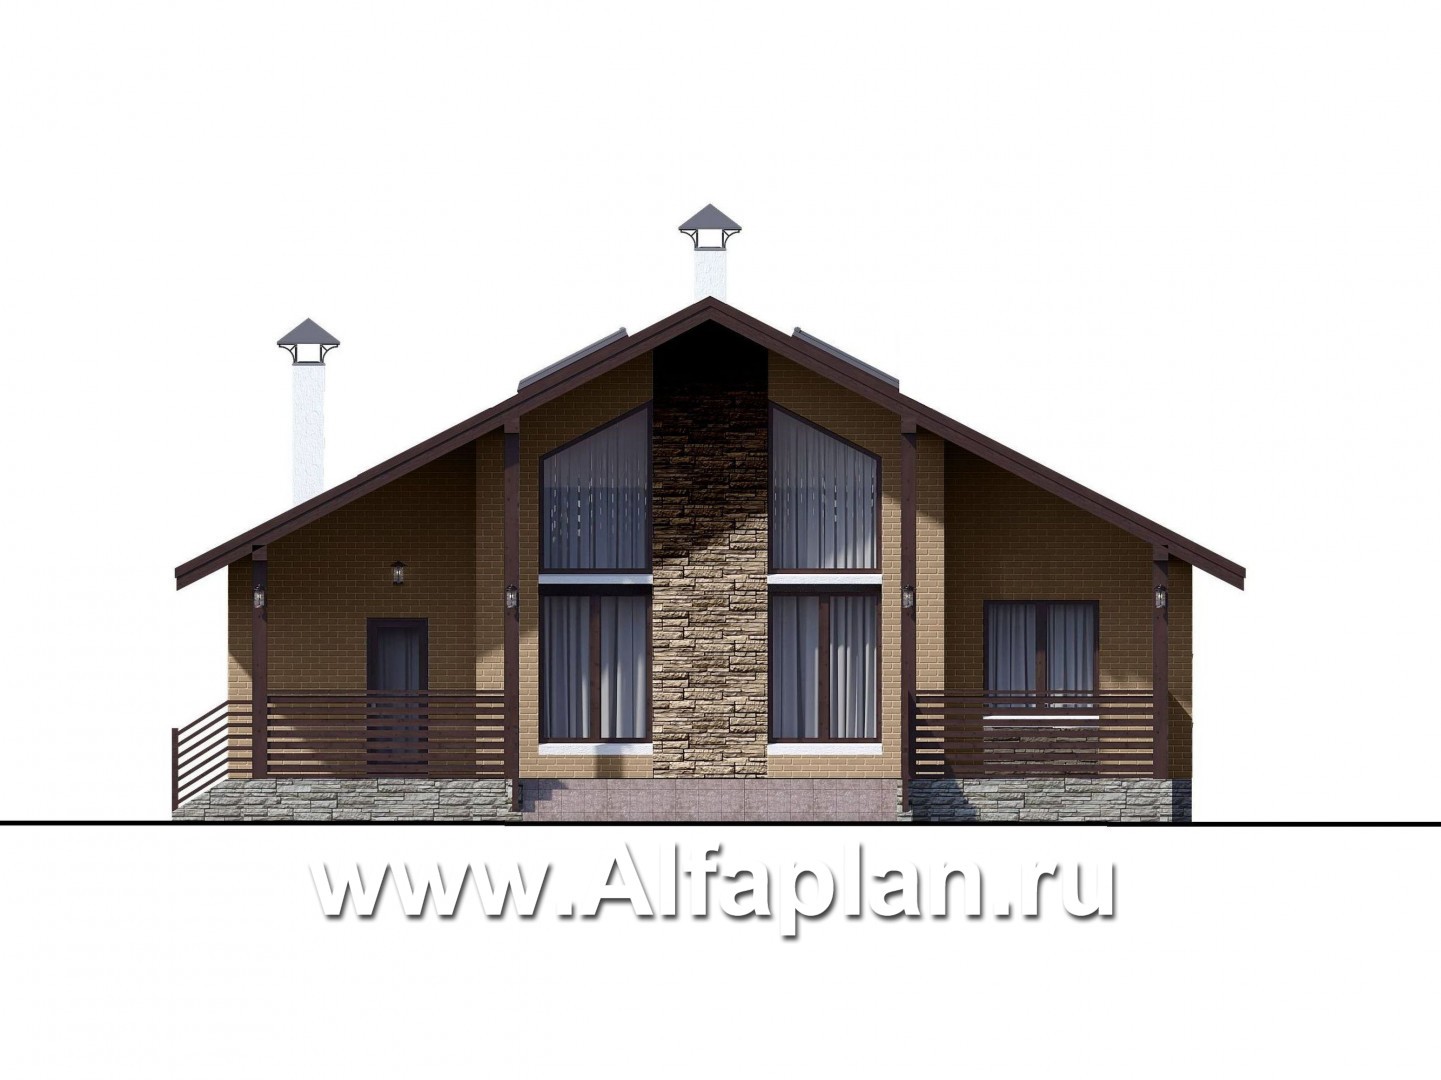 Проекты домов Альфаплан - «Моризо» - проект дома с мансардой, планировка с двусветной гостиной и 2 спальни на 1 эт, шале с двускатной крышей - изображение фасада №1